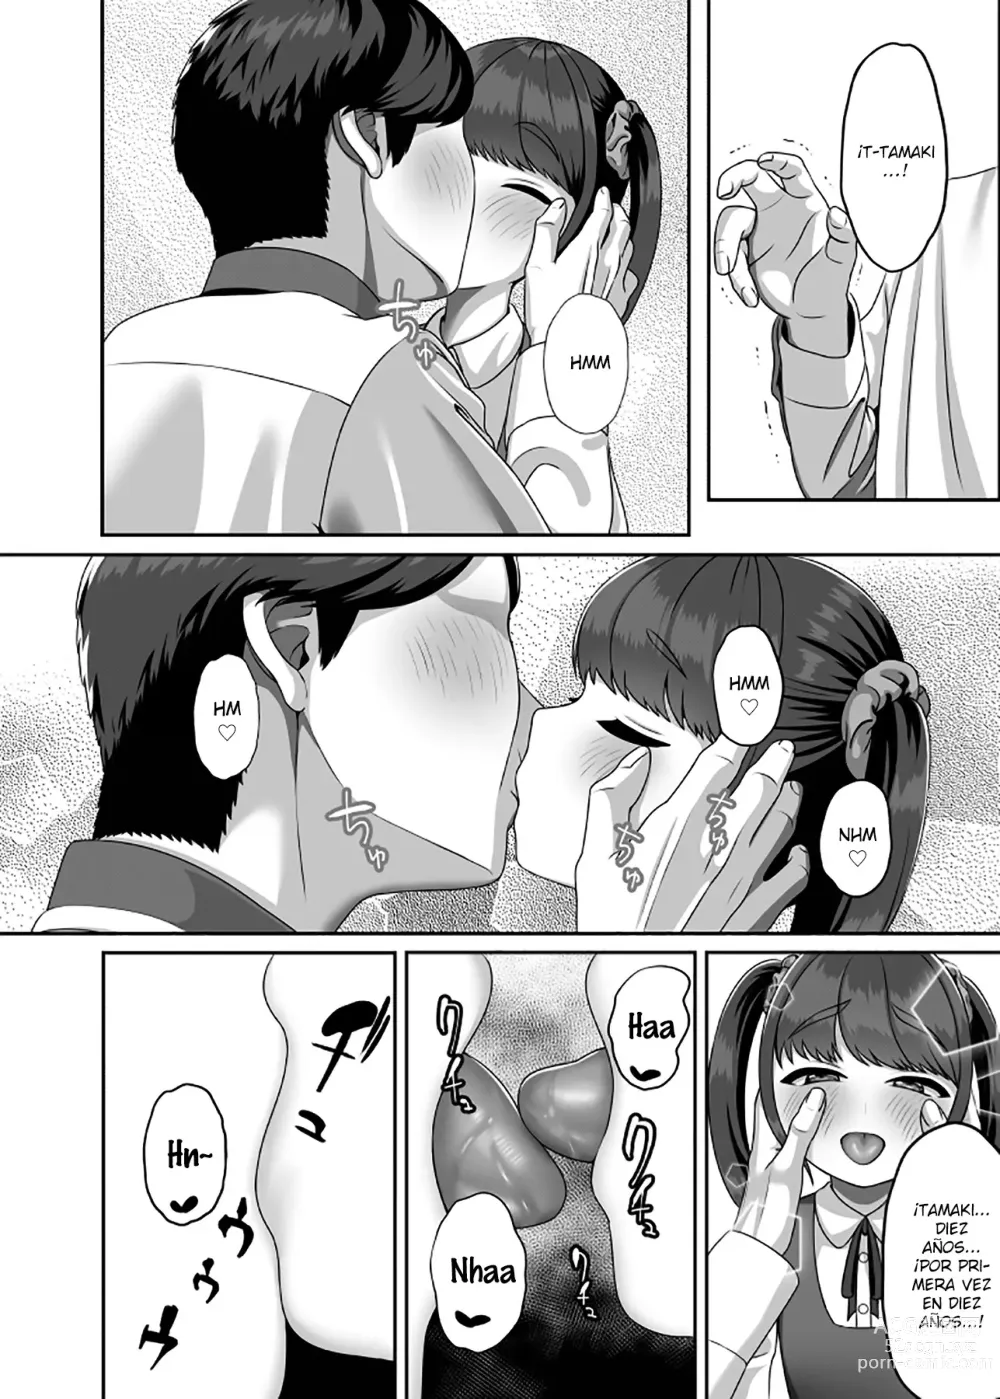 Page 7 of doujinshi Tuve sexo con mi esposa reencarnada por primera vez en diez años